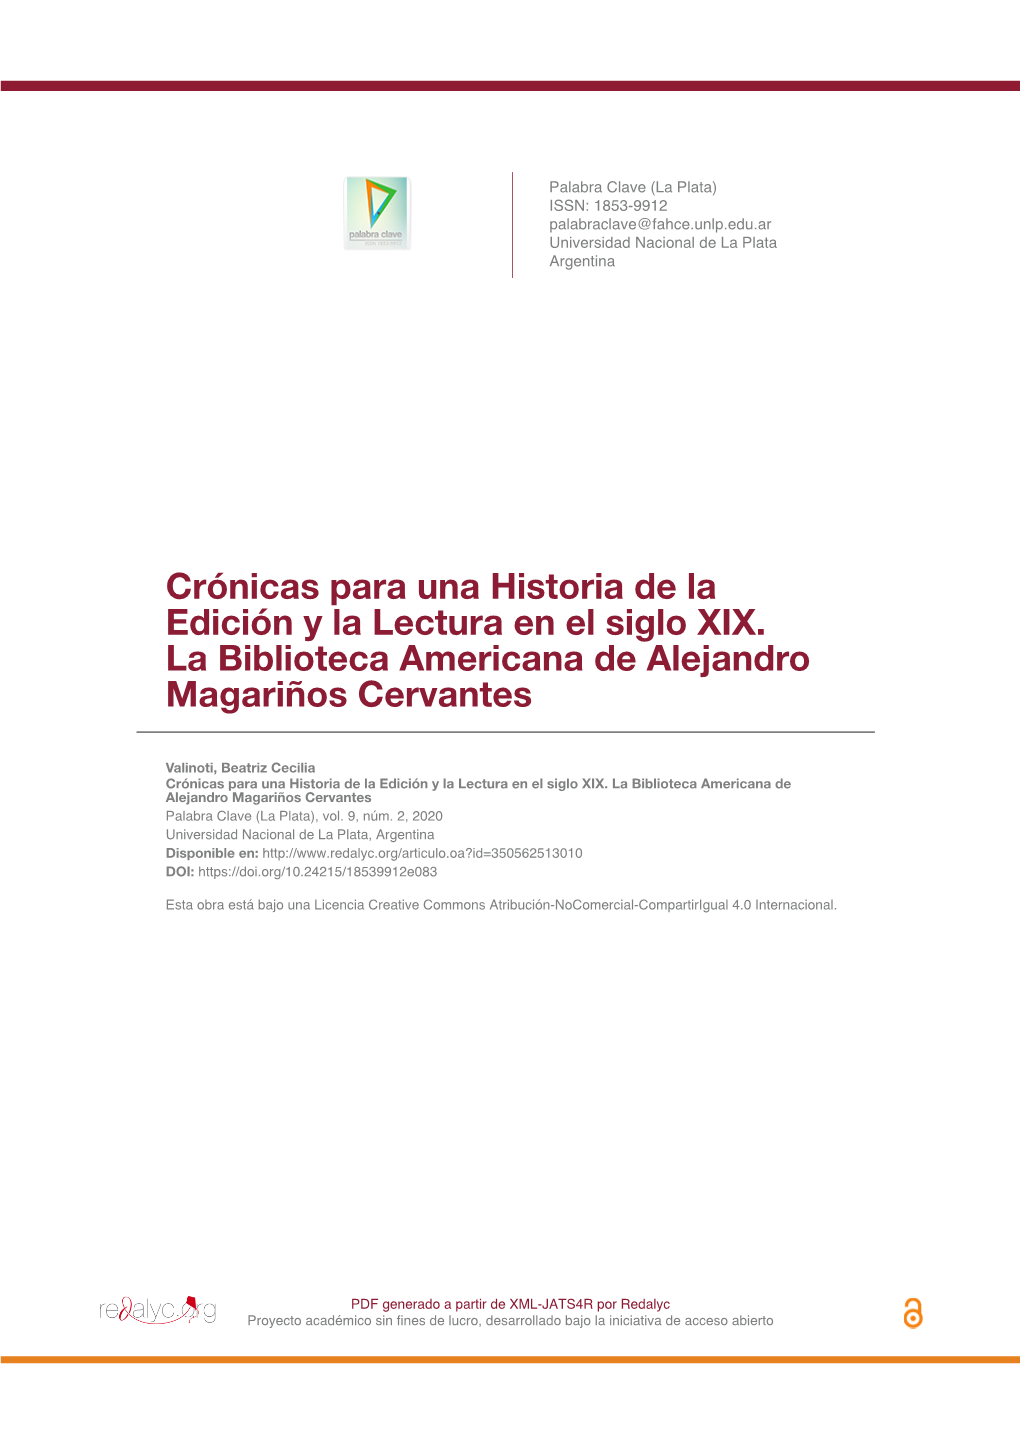 Crónicas Para Una Historia De La Edición Y La Lectura En El Siglo XIX